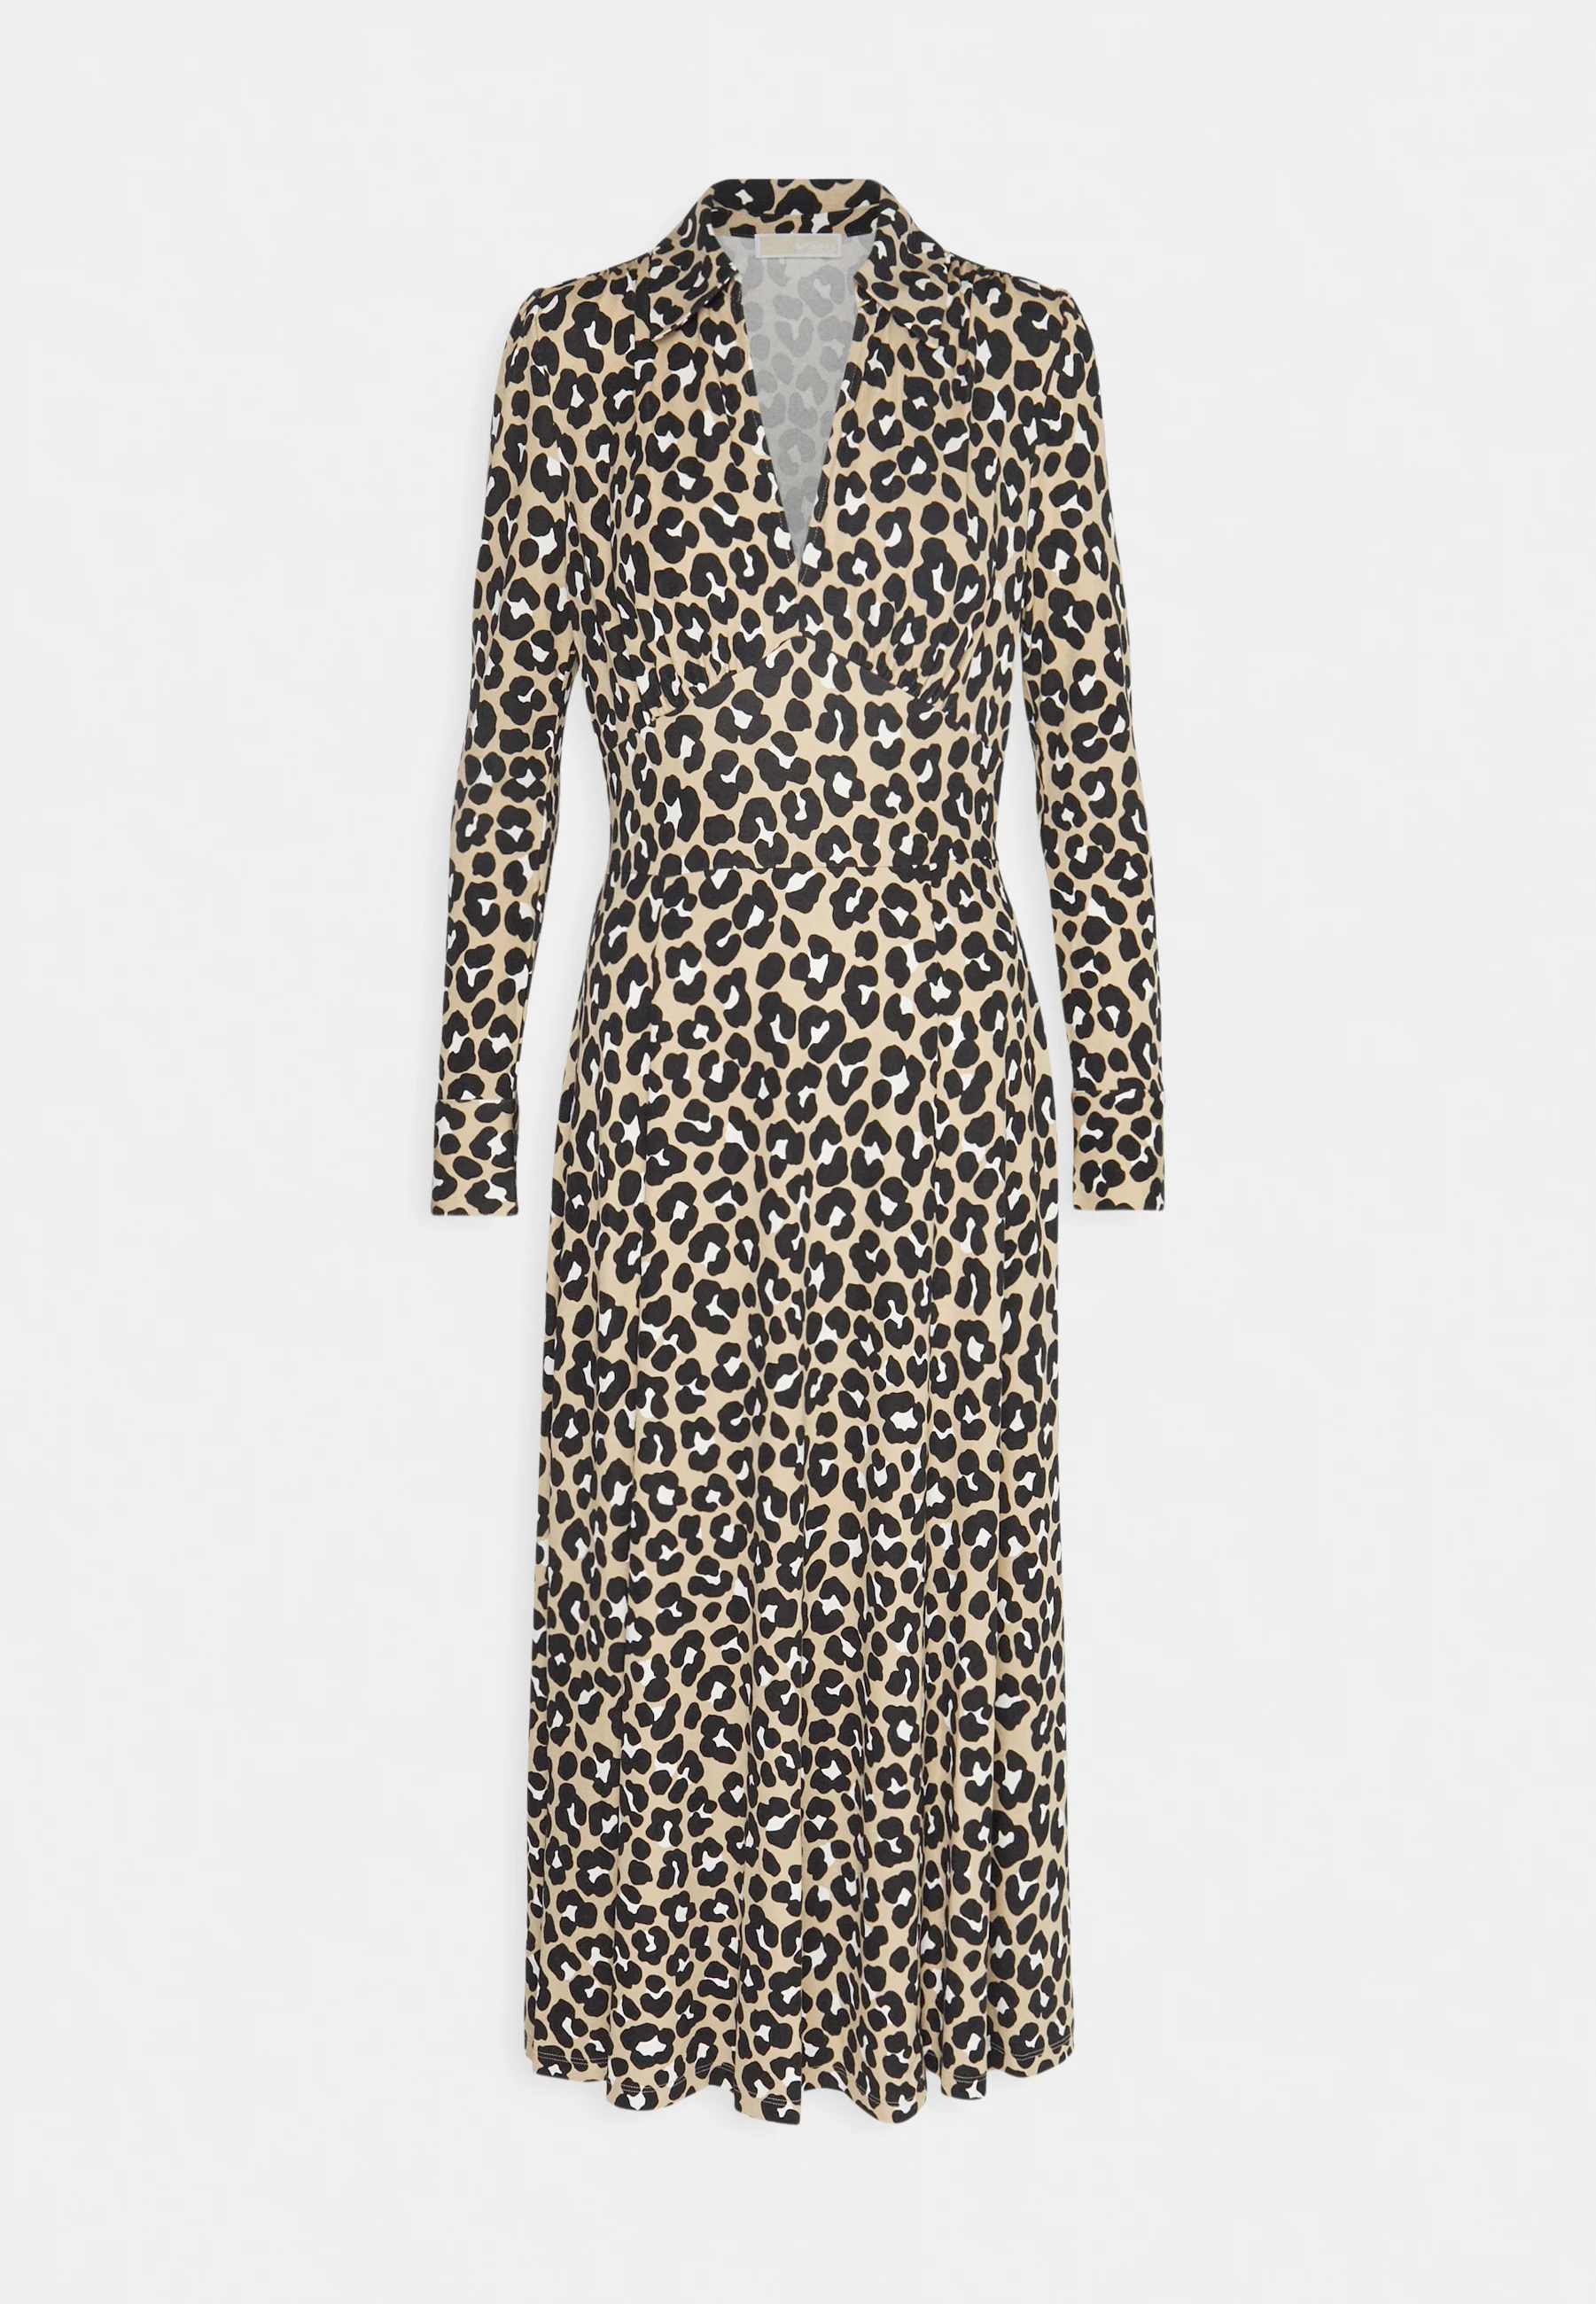  Vestido Cheetah: Una fusión de comodidad y glamour